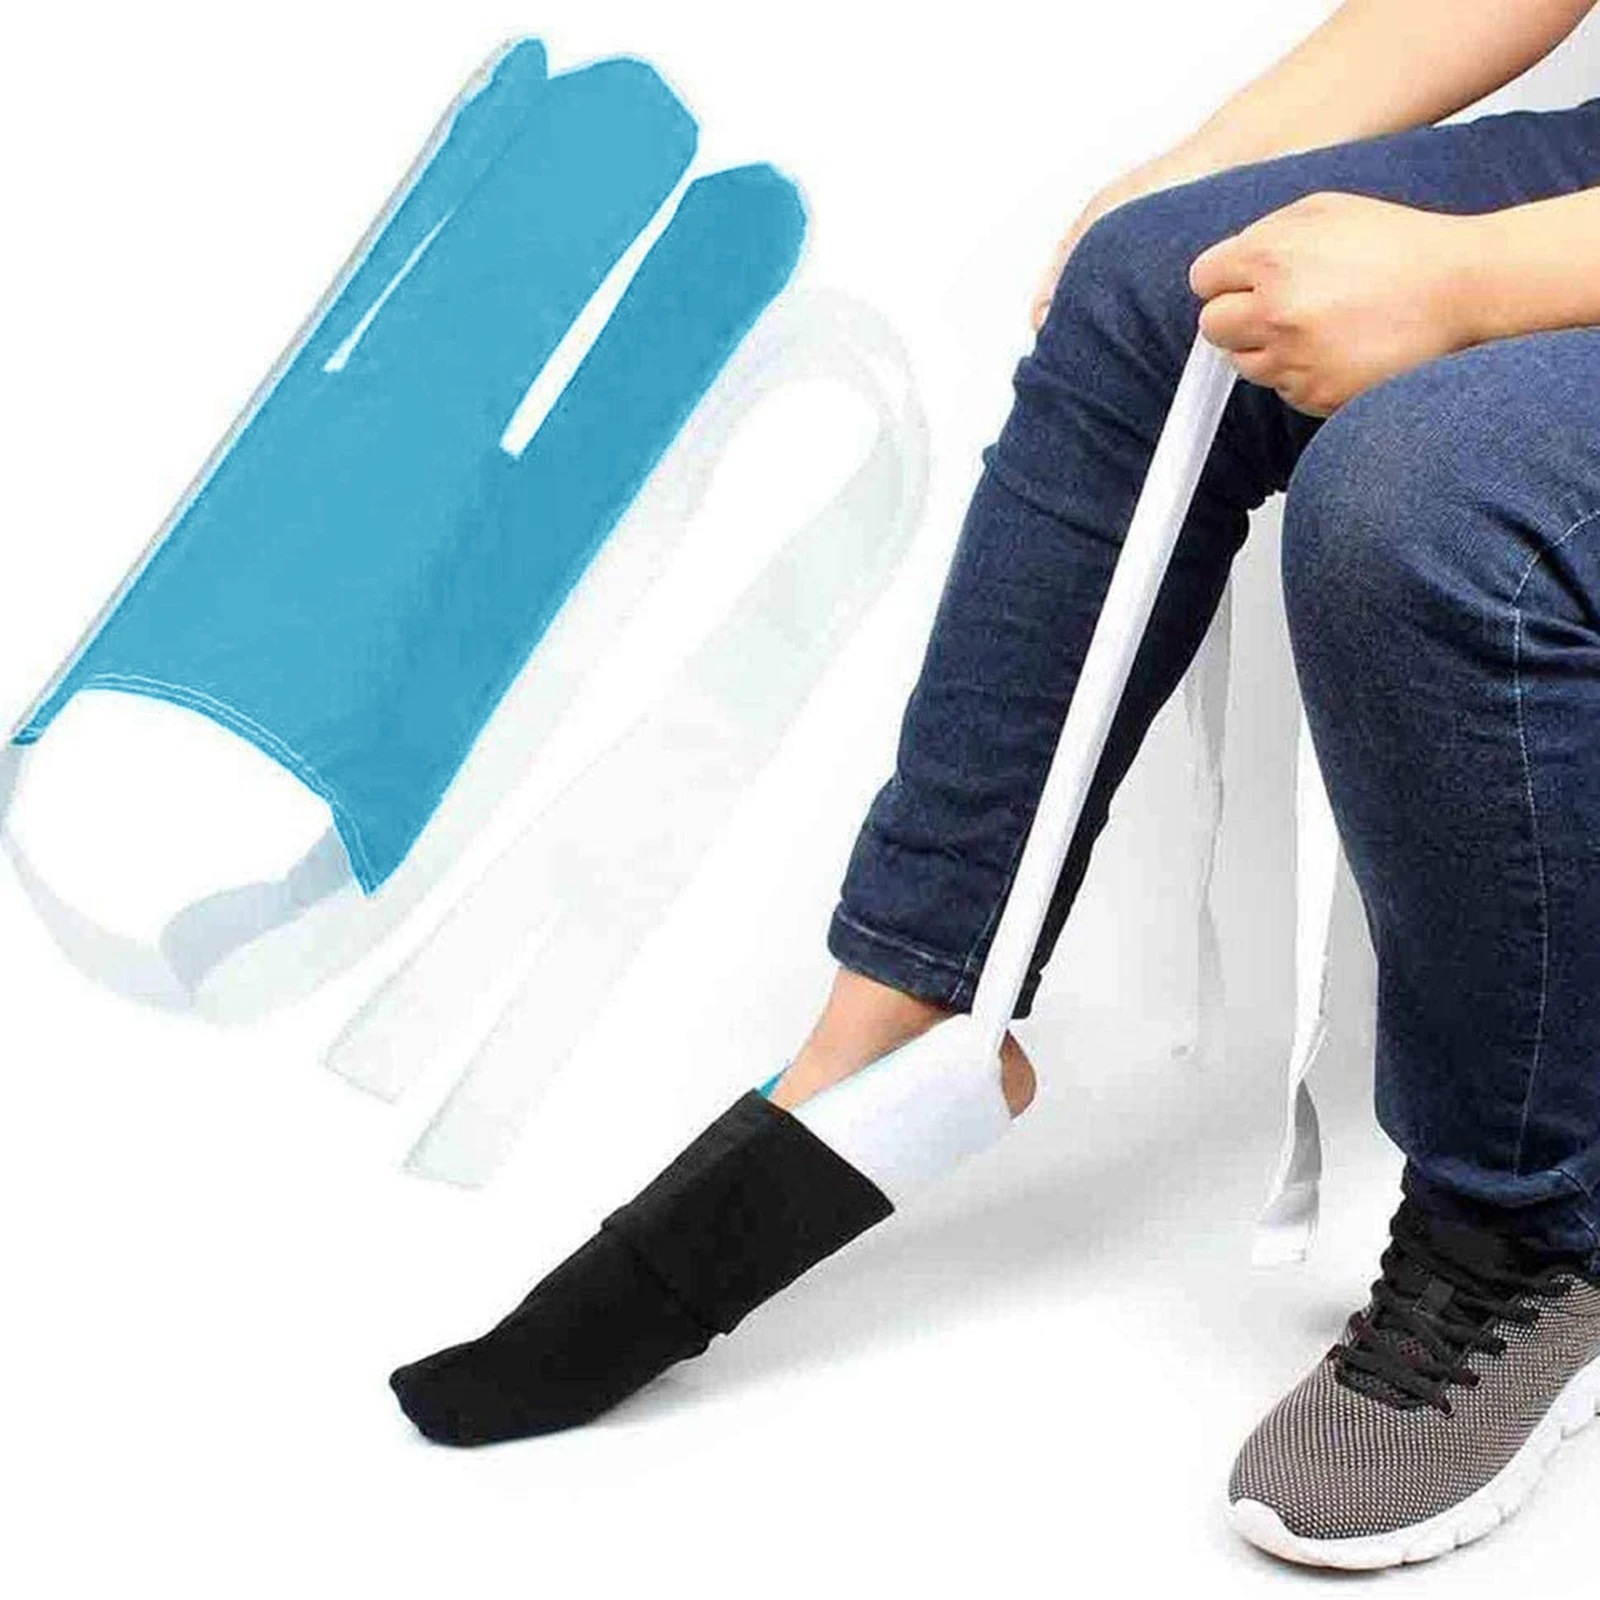 Flexible Sock Aid Kit Slider Sock Helper Aide Tool for Putting on Socks Men Women Elderly Sock Assist Device Sock Puller